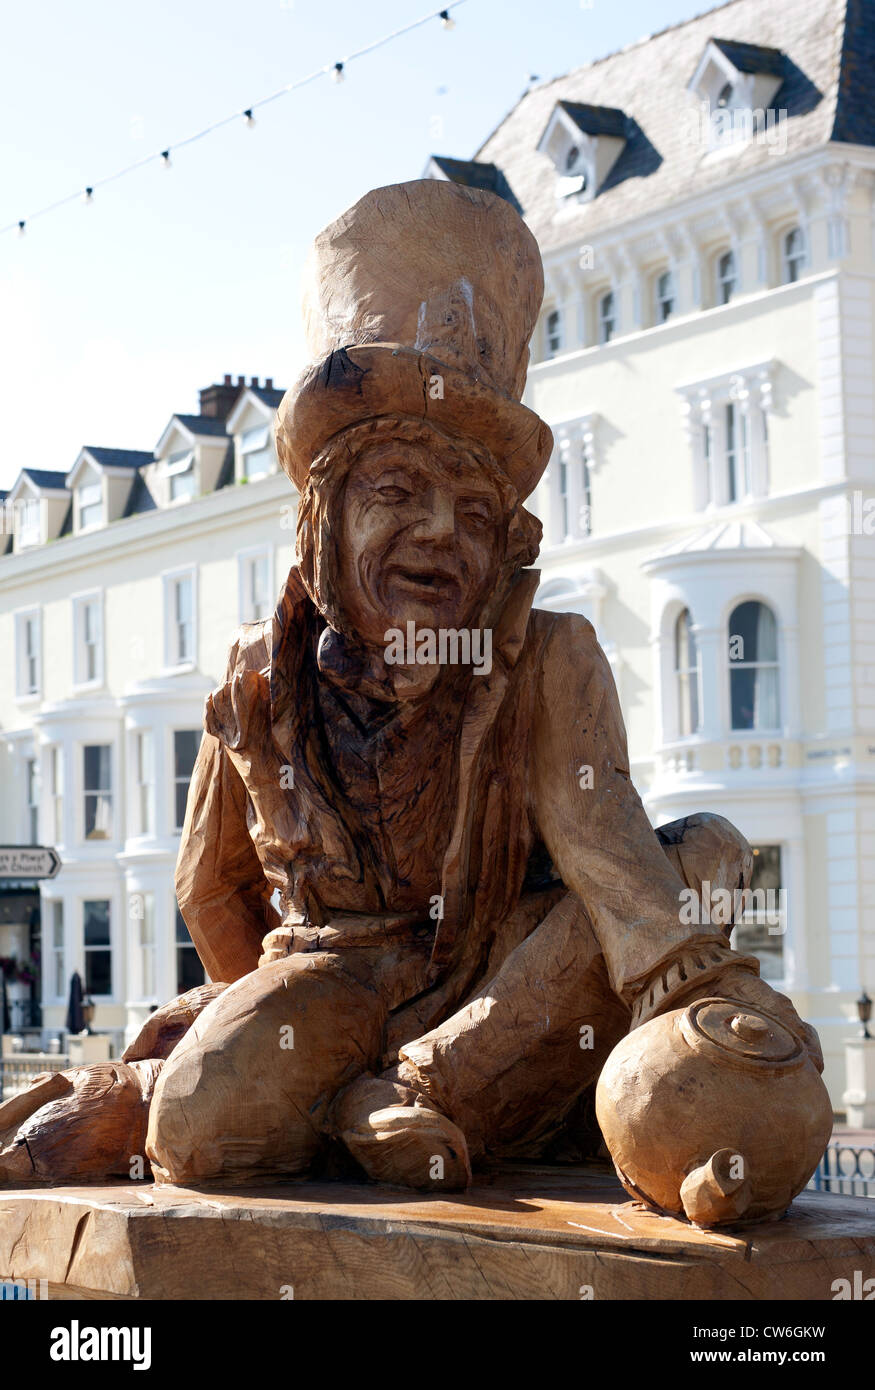 Sculpture en bois de 'The Mad Hatter' d'Alice au Pays des merveilles sur la promenade de Llandudno. Colin Pic Paxton/CP Photography Banque D'Images